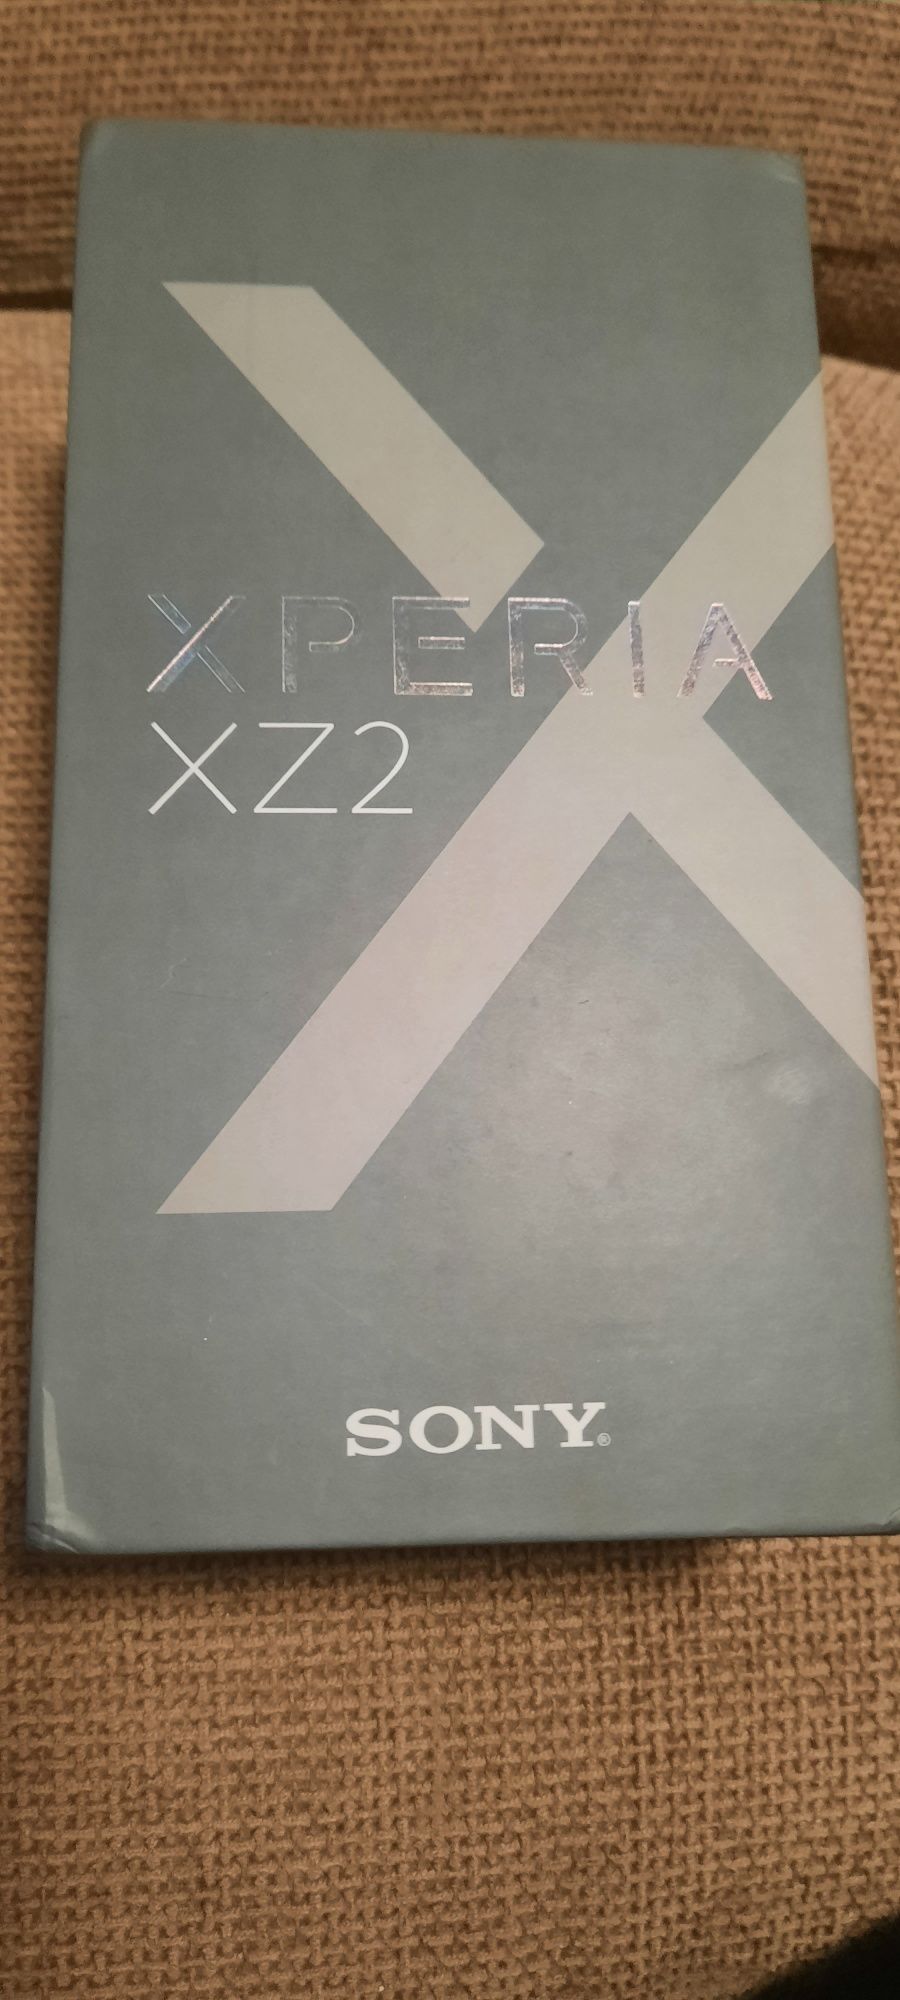 Sony Experia XZ2